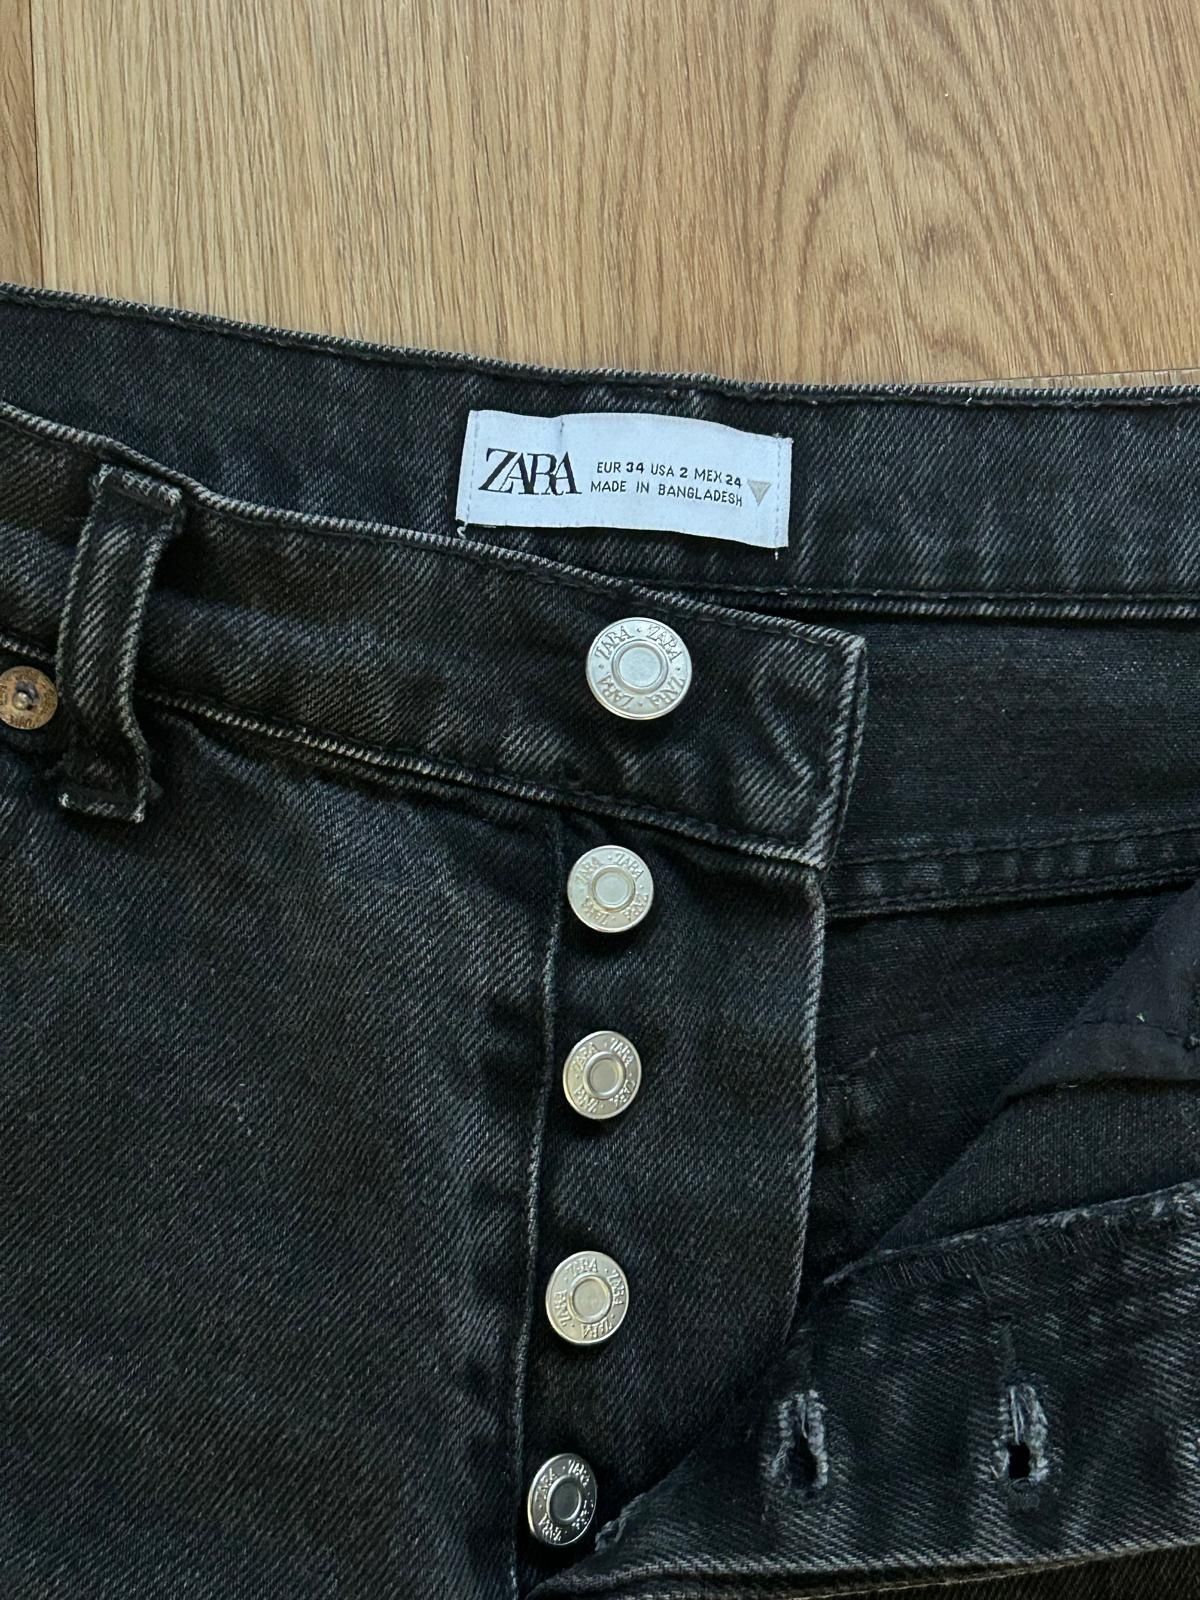 Calças da Zara 34